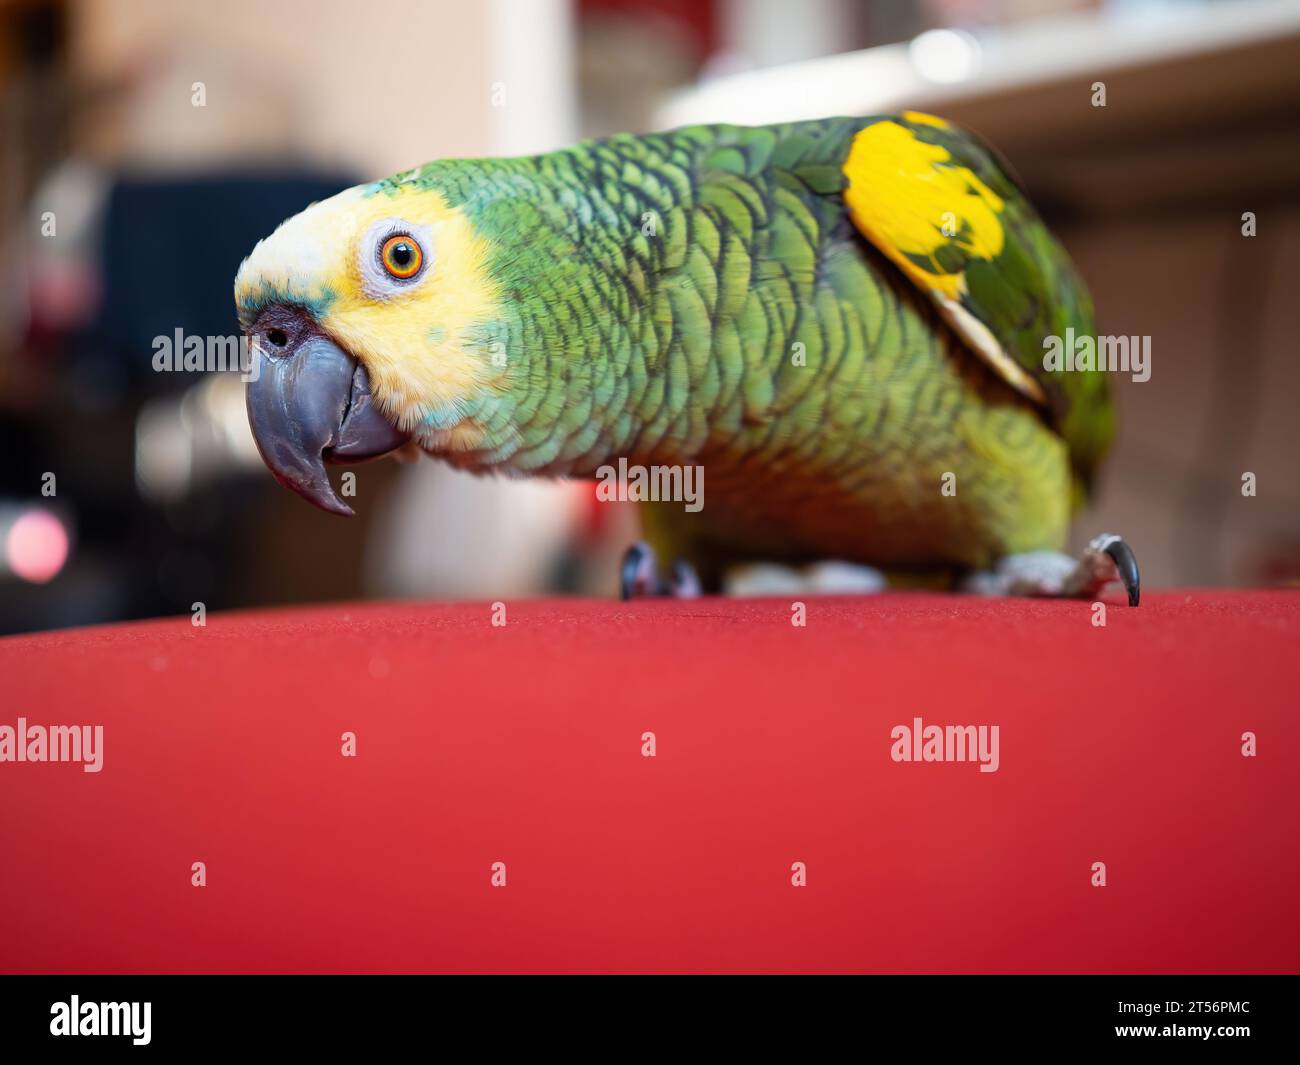 Der türkisfarbene amazonas-Papagei (Amazona aestiva) ist frei beweglich. Netter grüner Vogel auf roter Couch. Nahaufnahme. Stockfoto